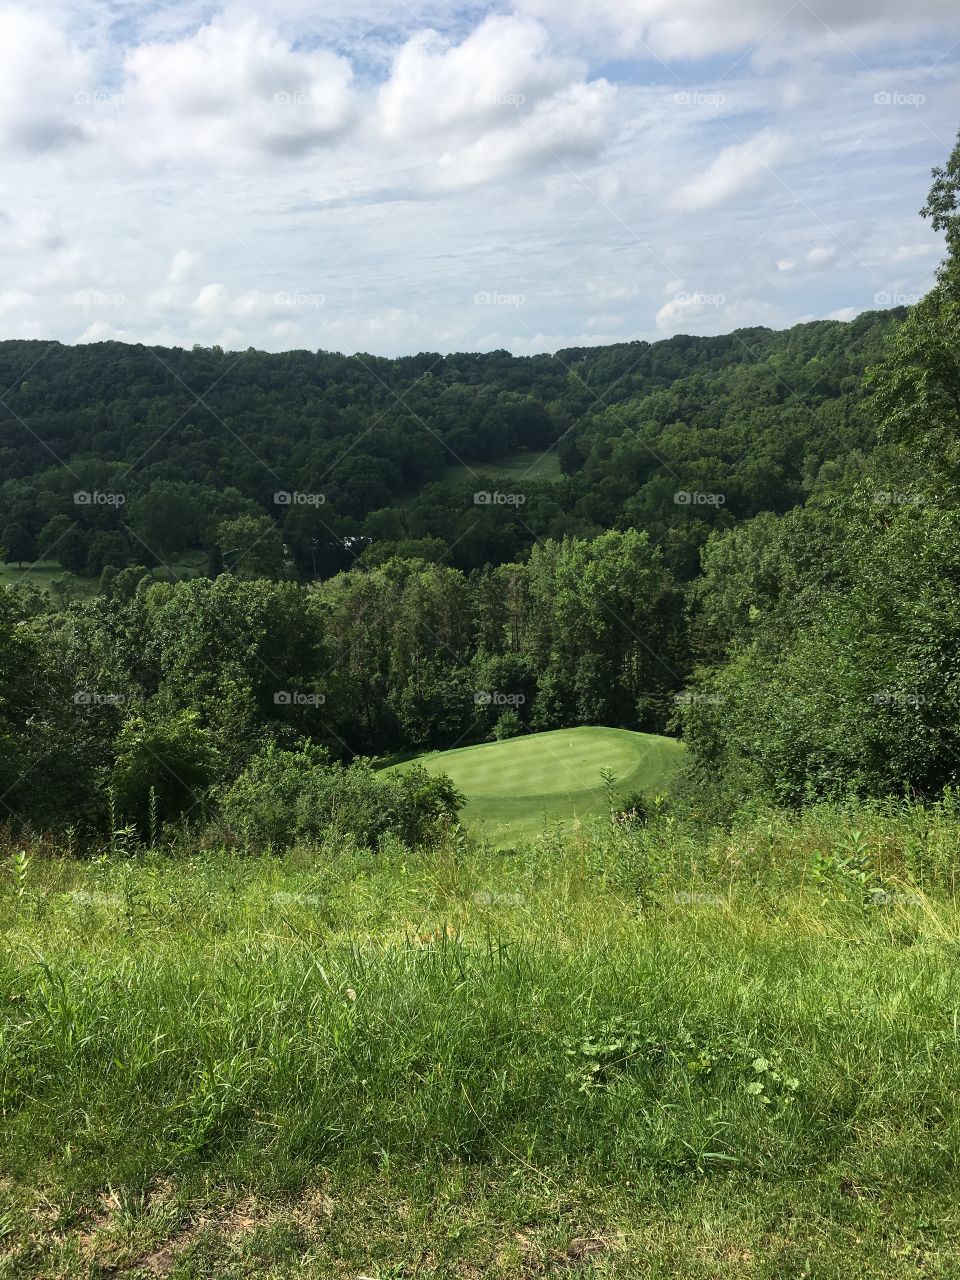 Pretty golf course view